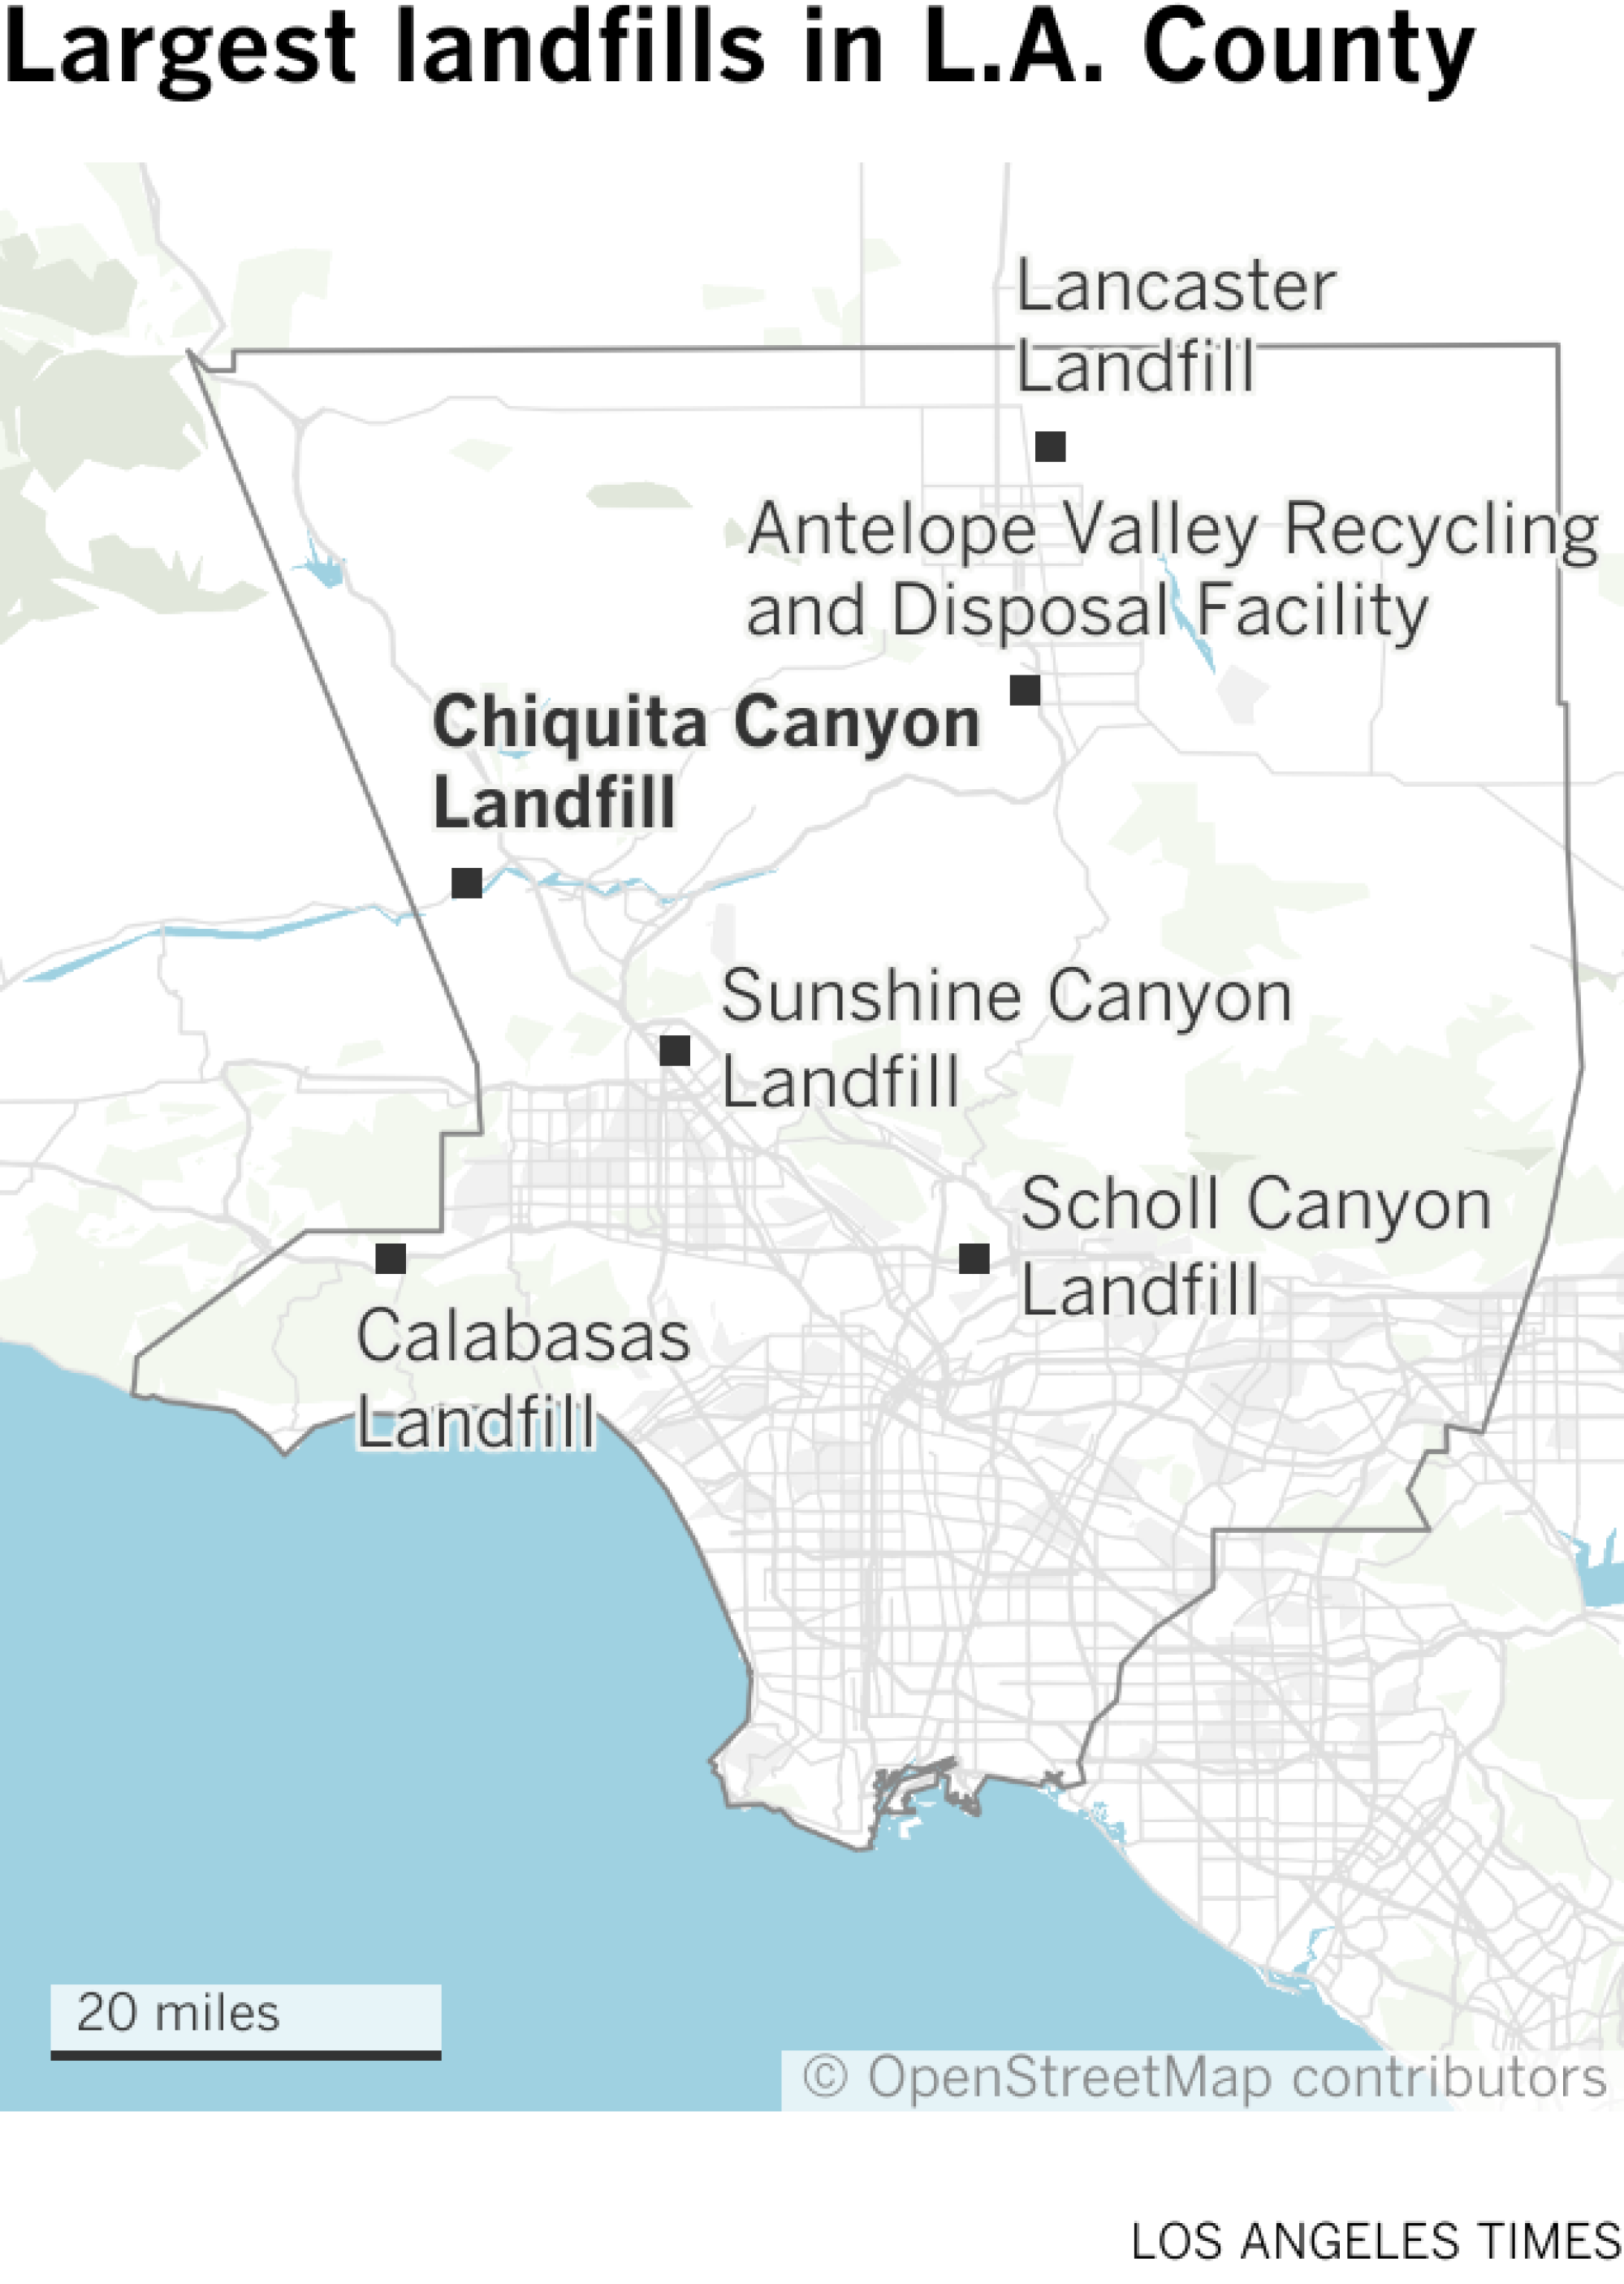 Une carte montre les emplacements des six plus grandes décharges du comté de LA.  Il s'agit de : Chiquita Canyon et Sunshine Canyon près de Santa Clarita ;  Canyon scolaire près de Pasadena ;  la décharge de Calabasas ;  la décharge de Lancaster ;  et l'installation de recyclage et d'élimination d'Antelope Valley.